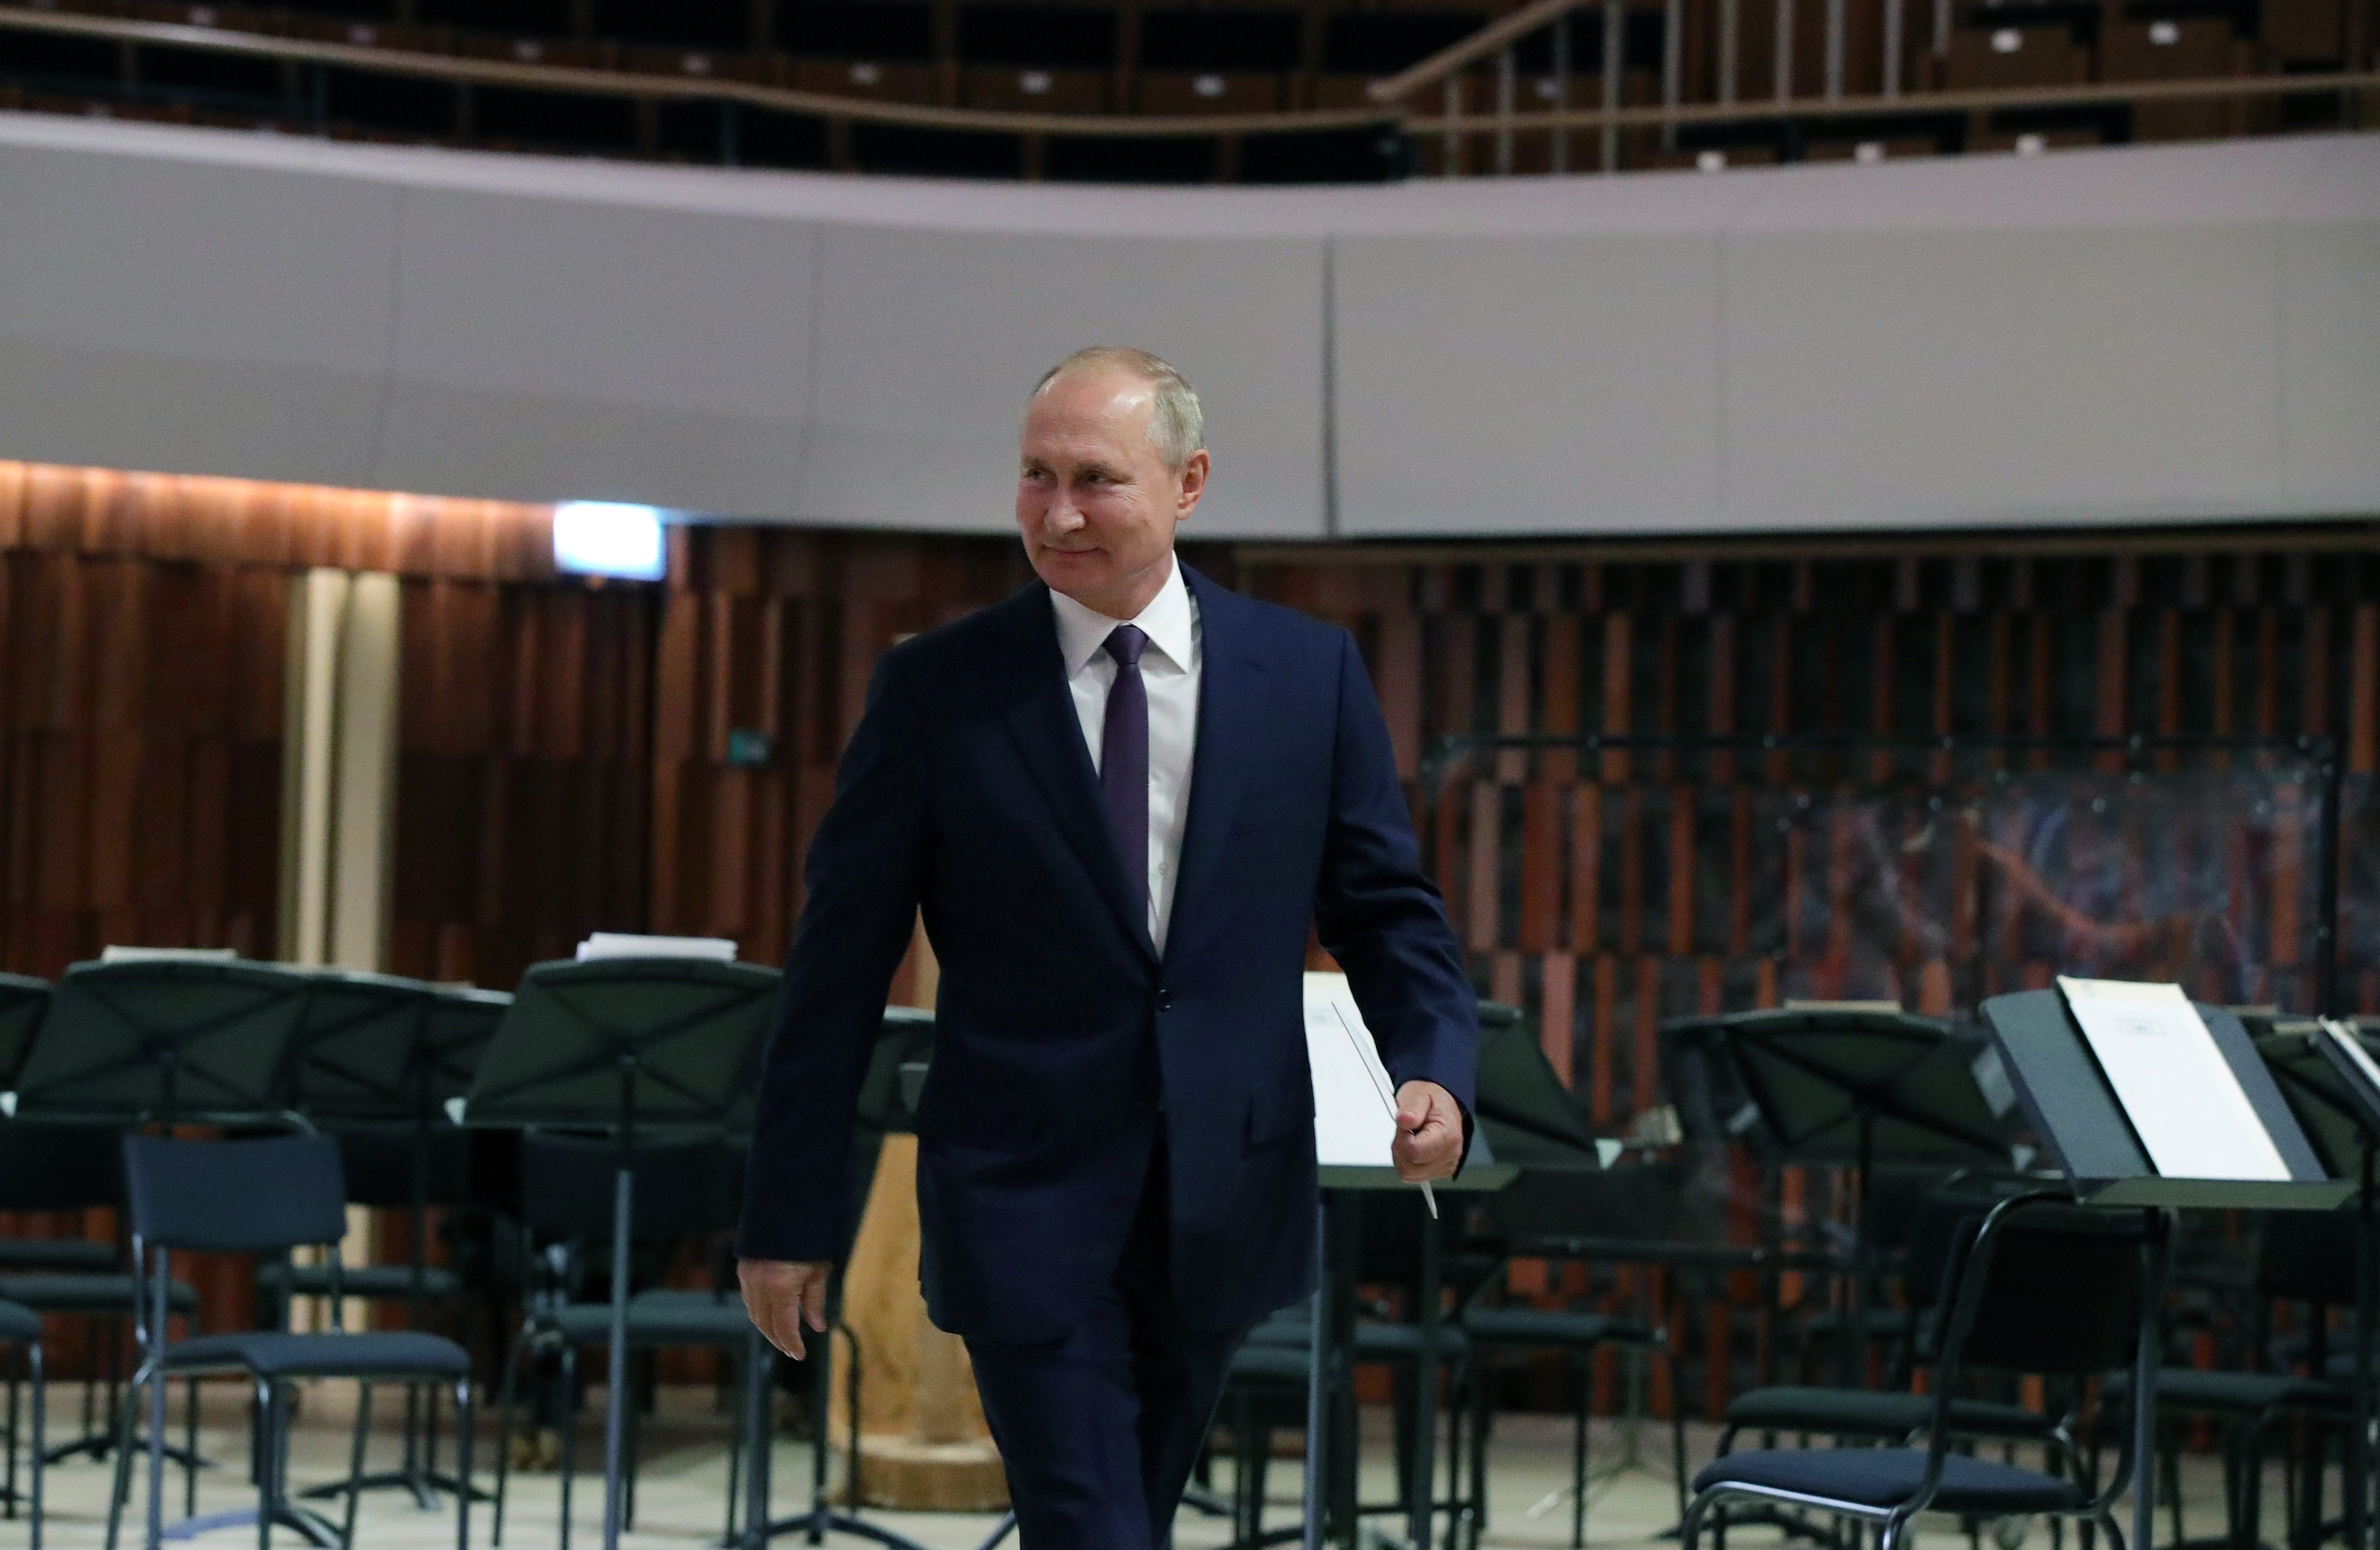 Putin expressa el seu suport a una reforma constitucional a Bielorússia